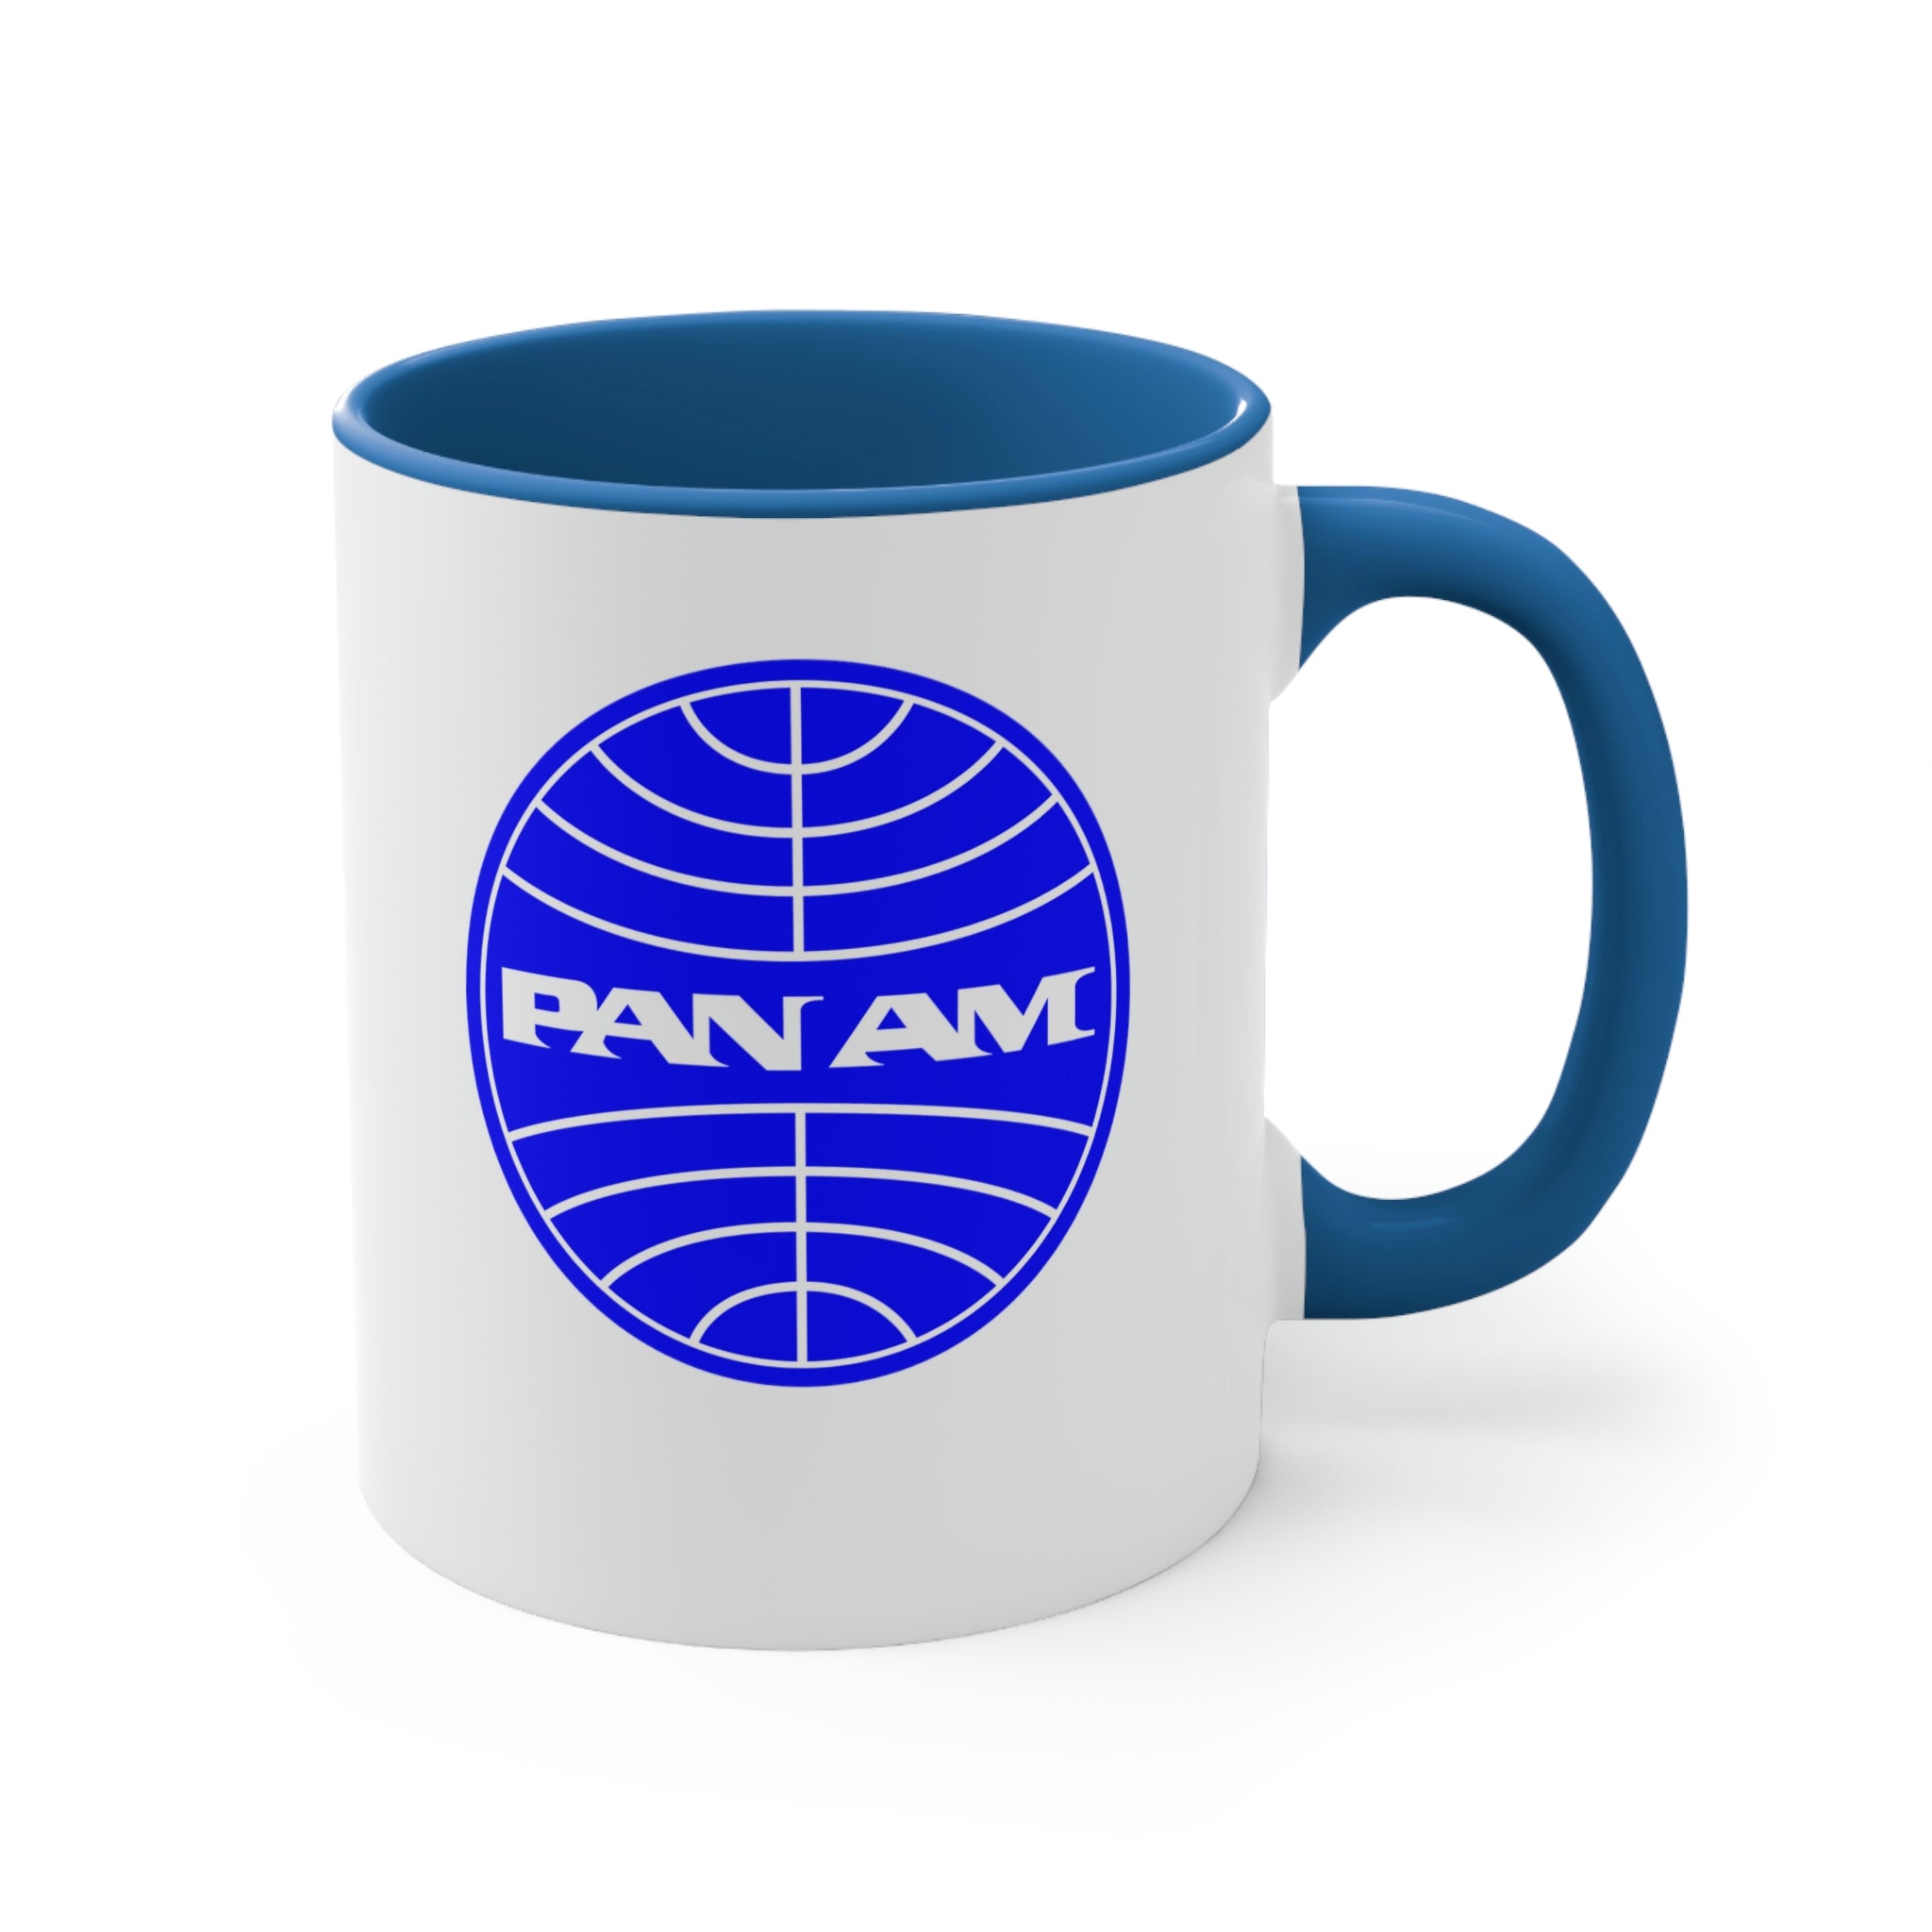 Pan Am Coffee Mug, 11oz